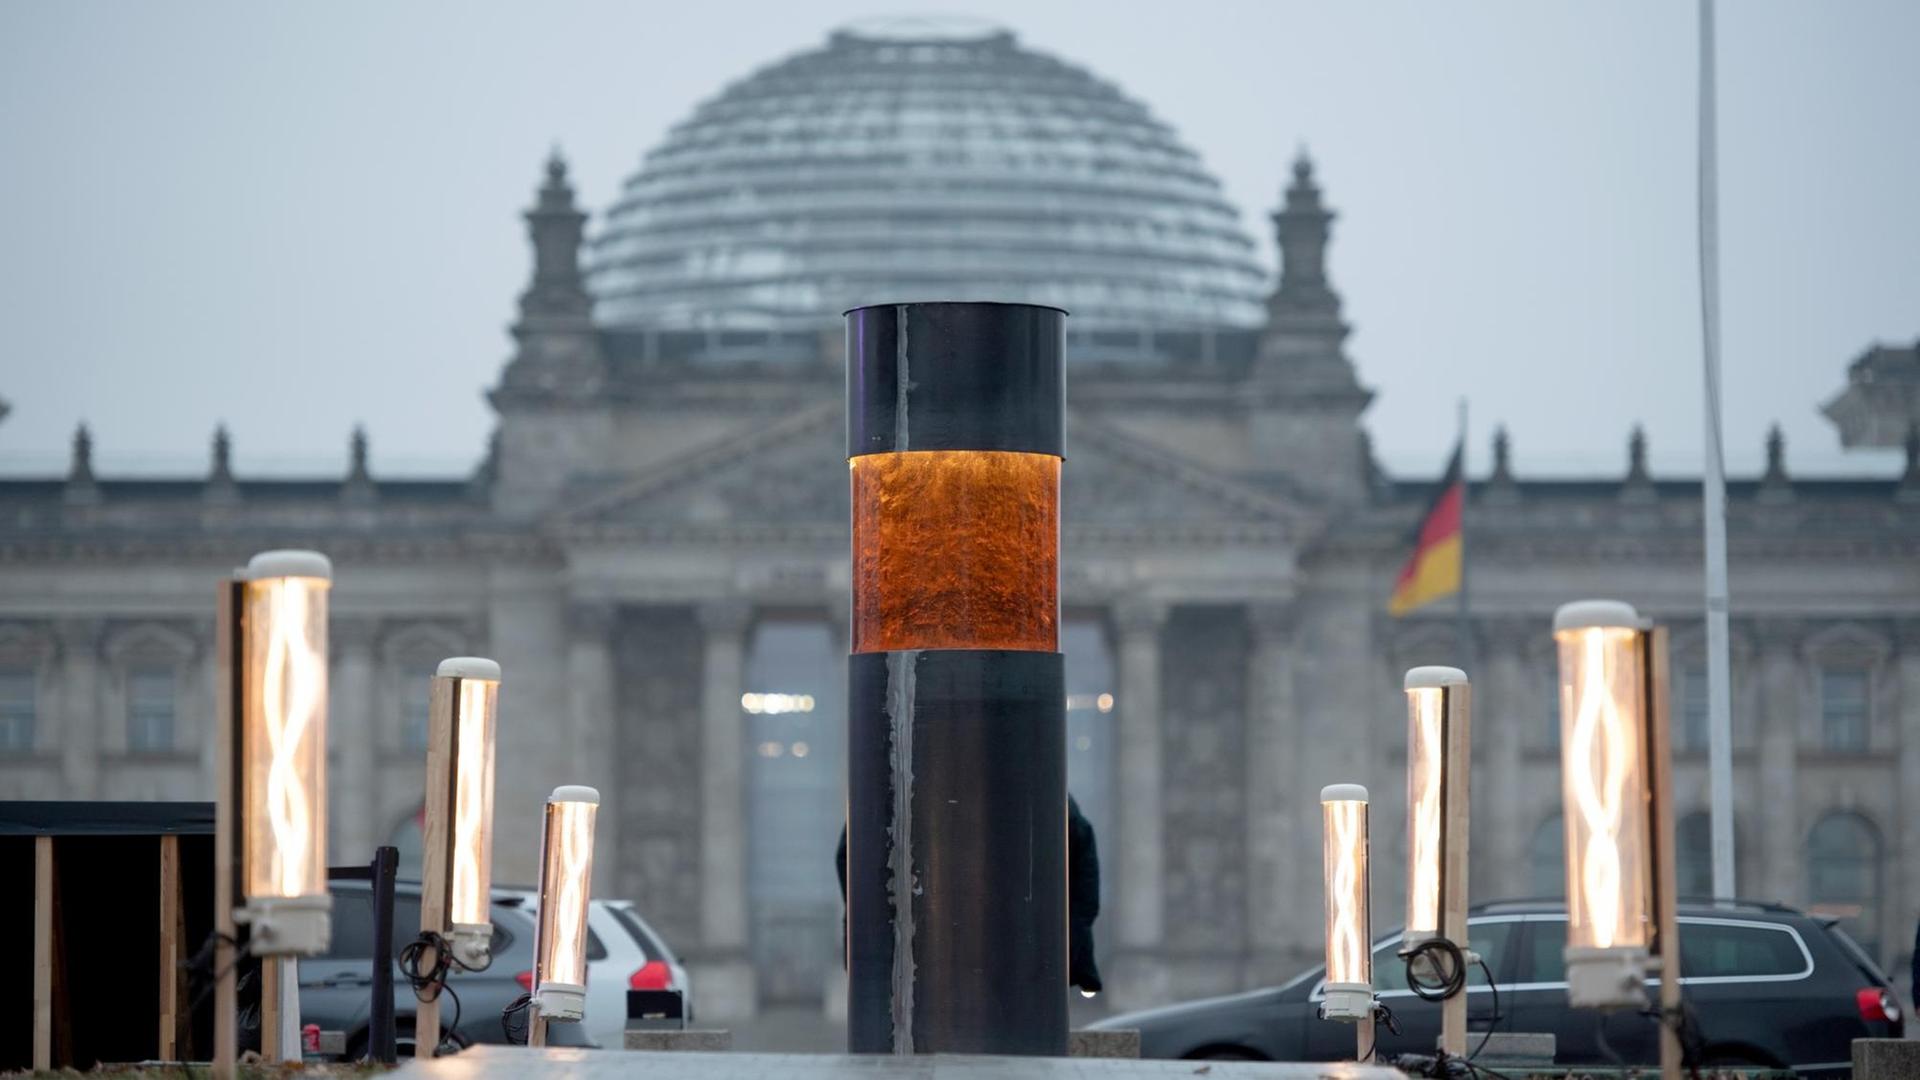 Die Säule aus Metall hat im oberen Drittel eine rötliche Glasscheibe, durch die man die Asche sieht. Im Hintergrund unscharf der Reichstag.